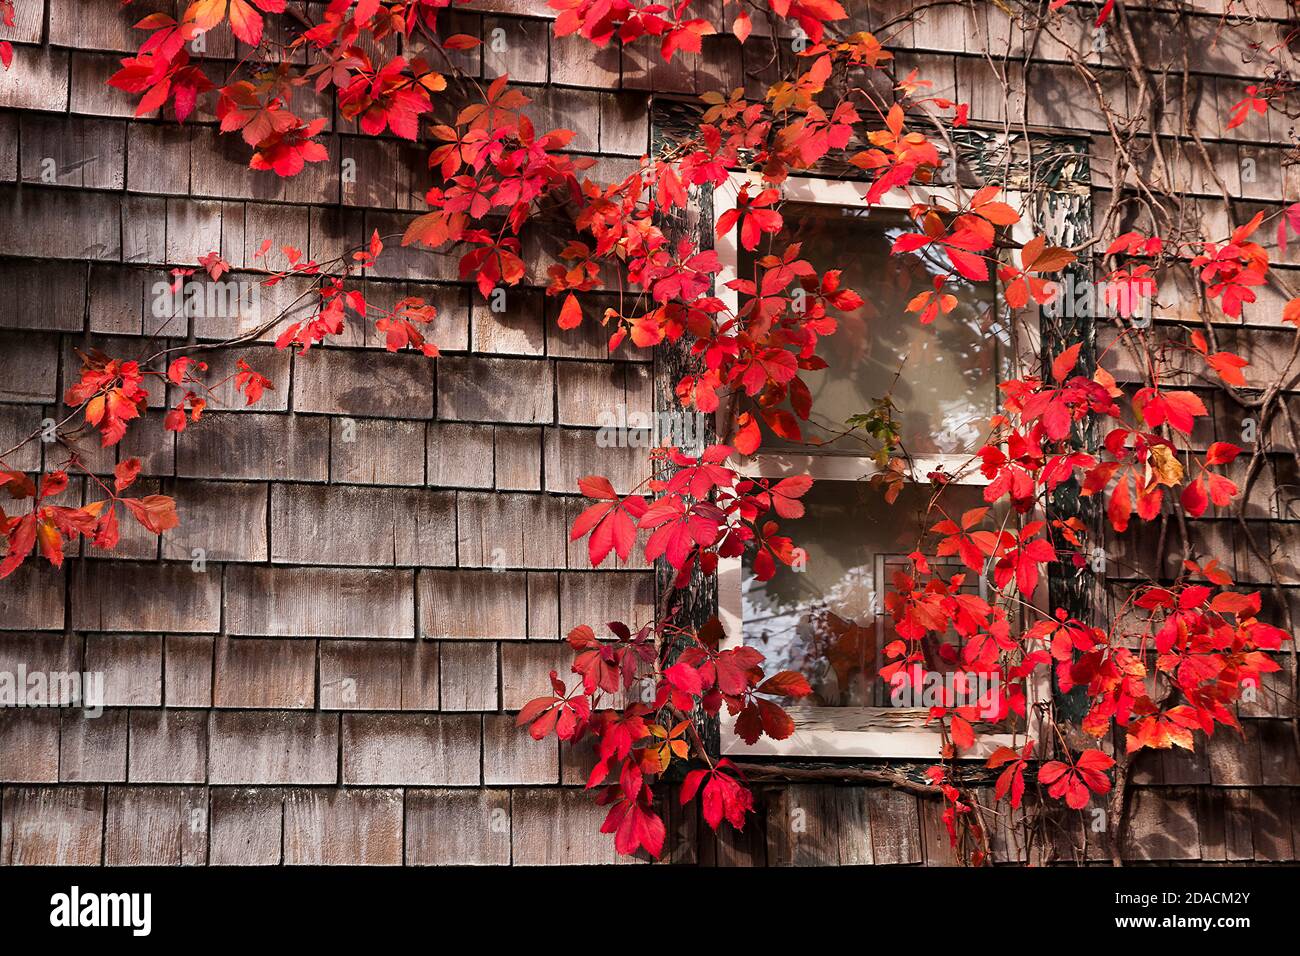 Auffällige Virginia Creeper rote Blattstöcke um ein Fenster auf einem Holzschindelhaus in Orange County, New York, USA. Stockfoto